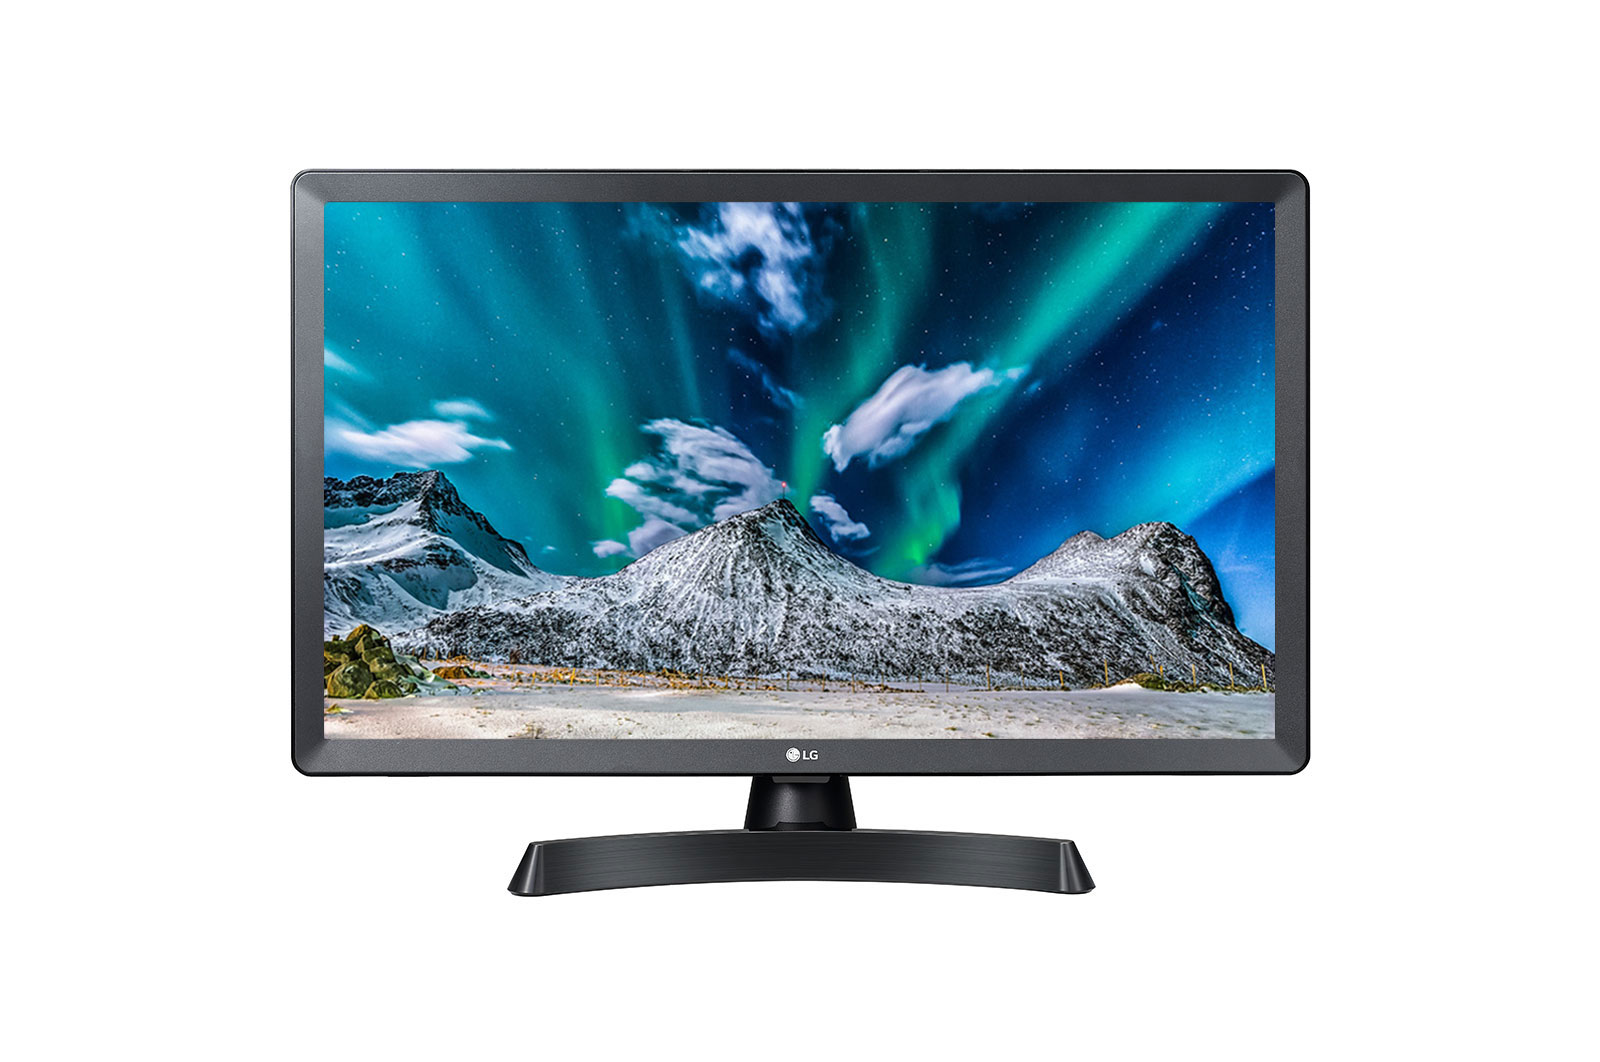 Televizor-monitor LG 24TL510S-PZ, 60 cm, HD, Smart TV, Wi-Fi, HDMI, USB, Slot CI, Negru